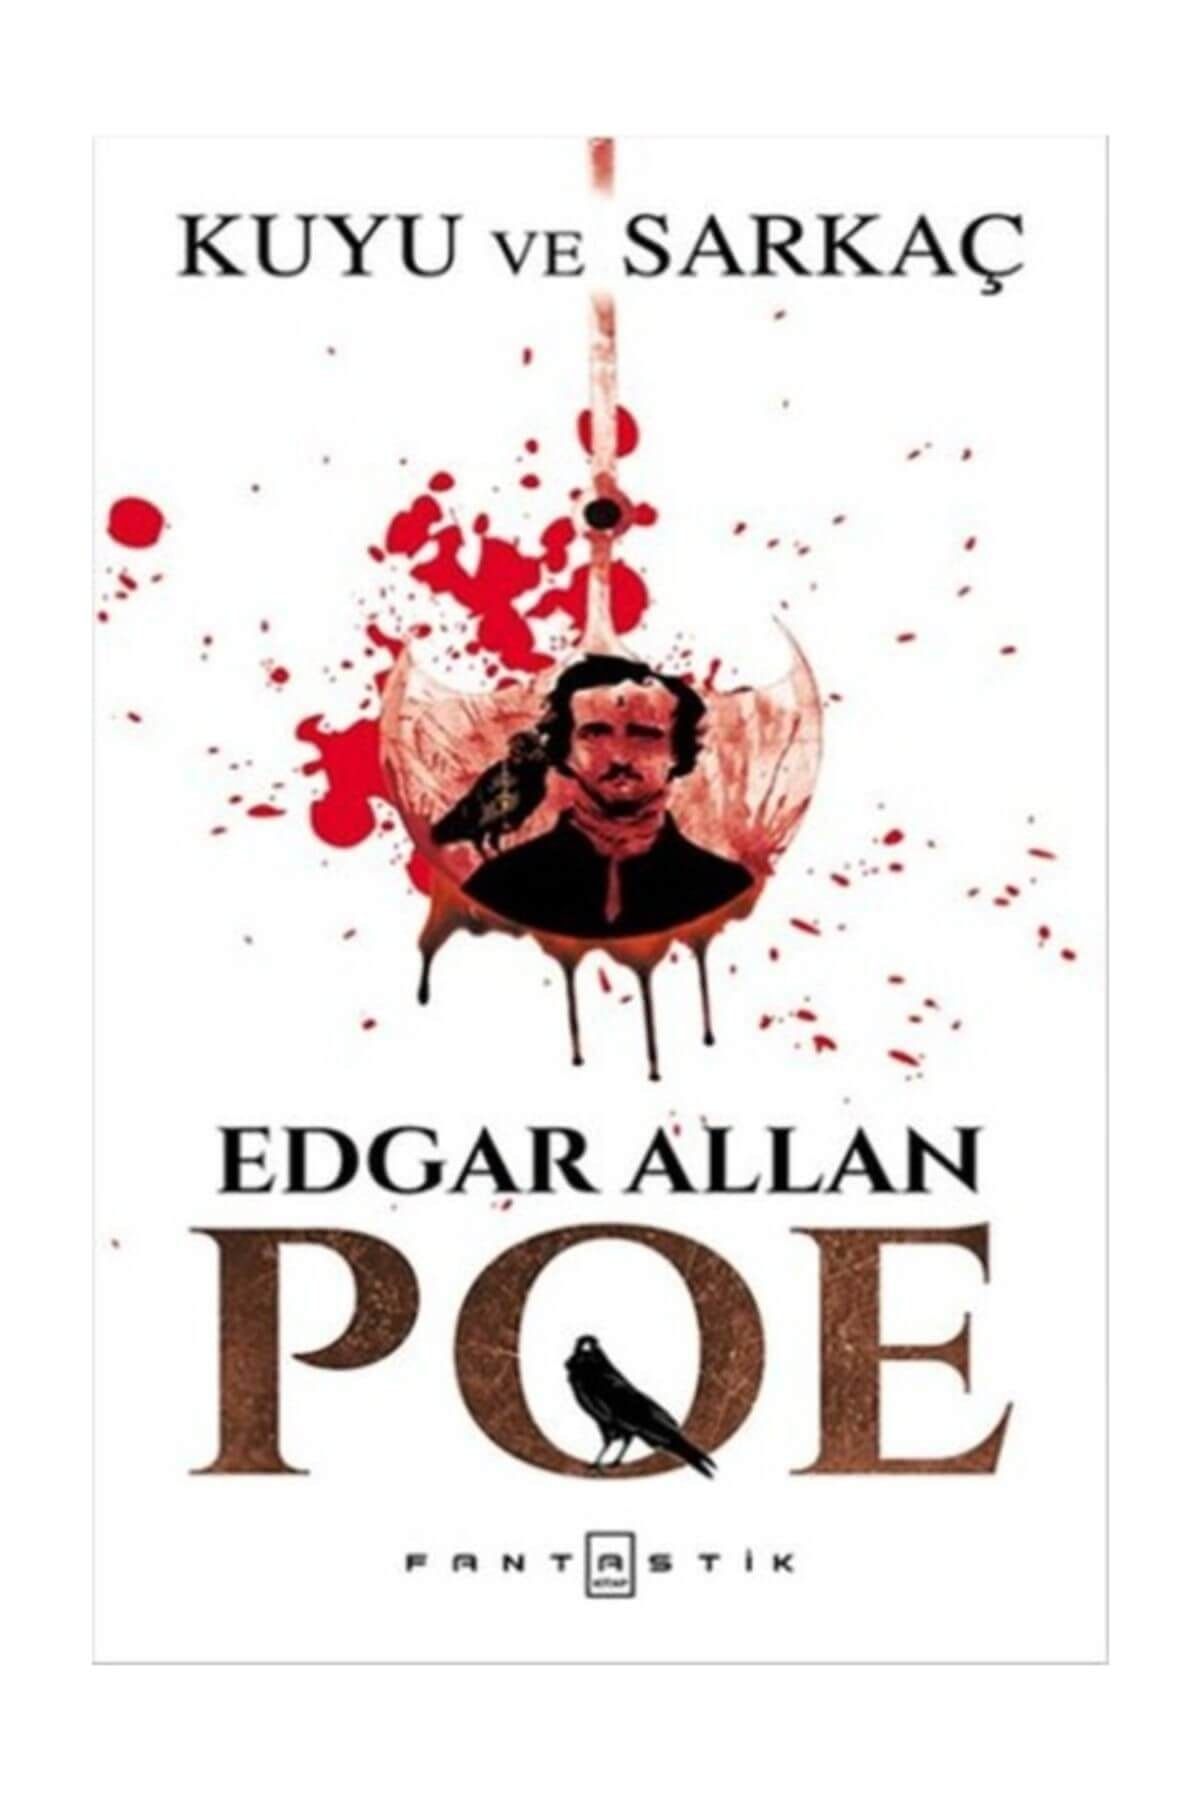 Fantastik Kitap Kuyu Ve Sarkaç Edgar Allan Poe - Edgar Allan Poe